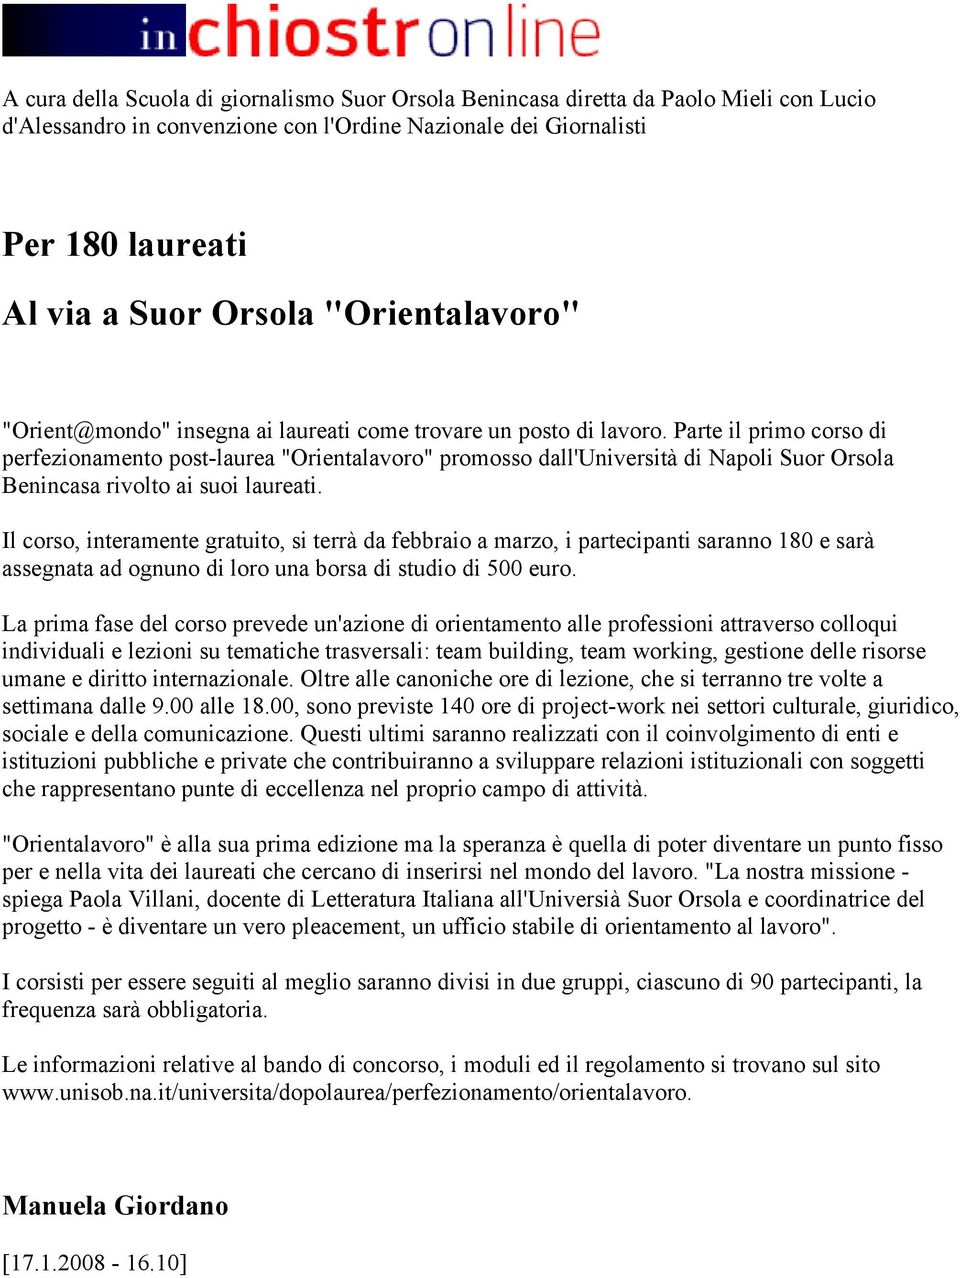 Parte il primo corso di perfezionamento post-laurea "Orientalavoro" promosso dall'università di Napoli Suor Orsola Benincasa rivolto ai suoi laureati.